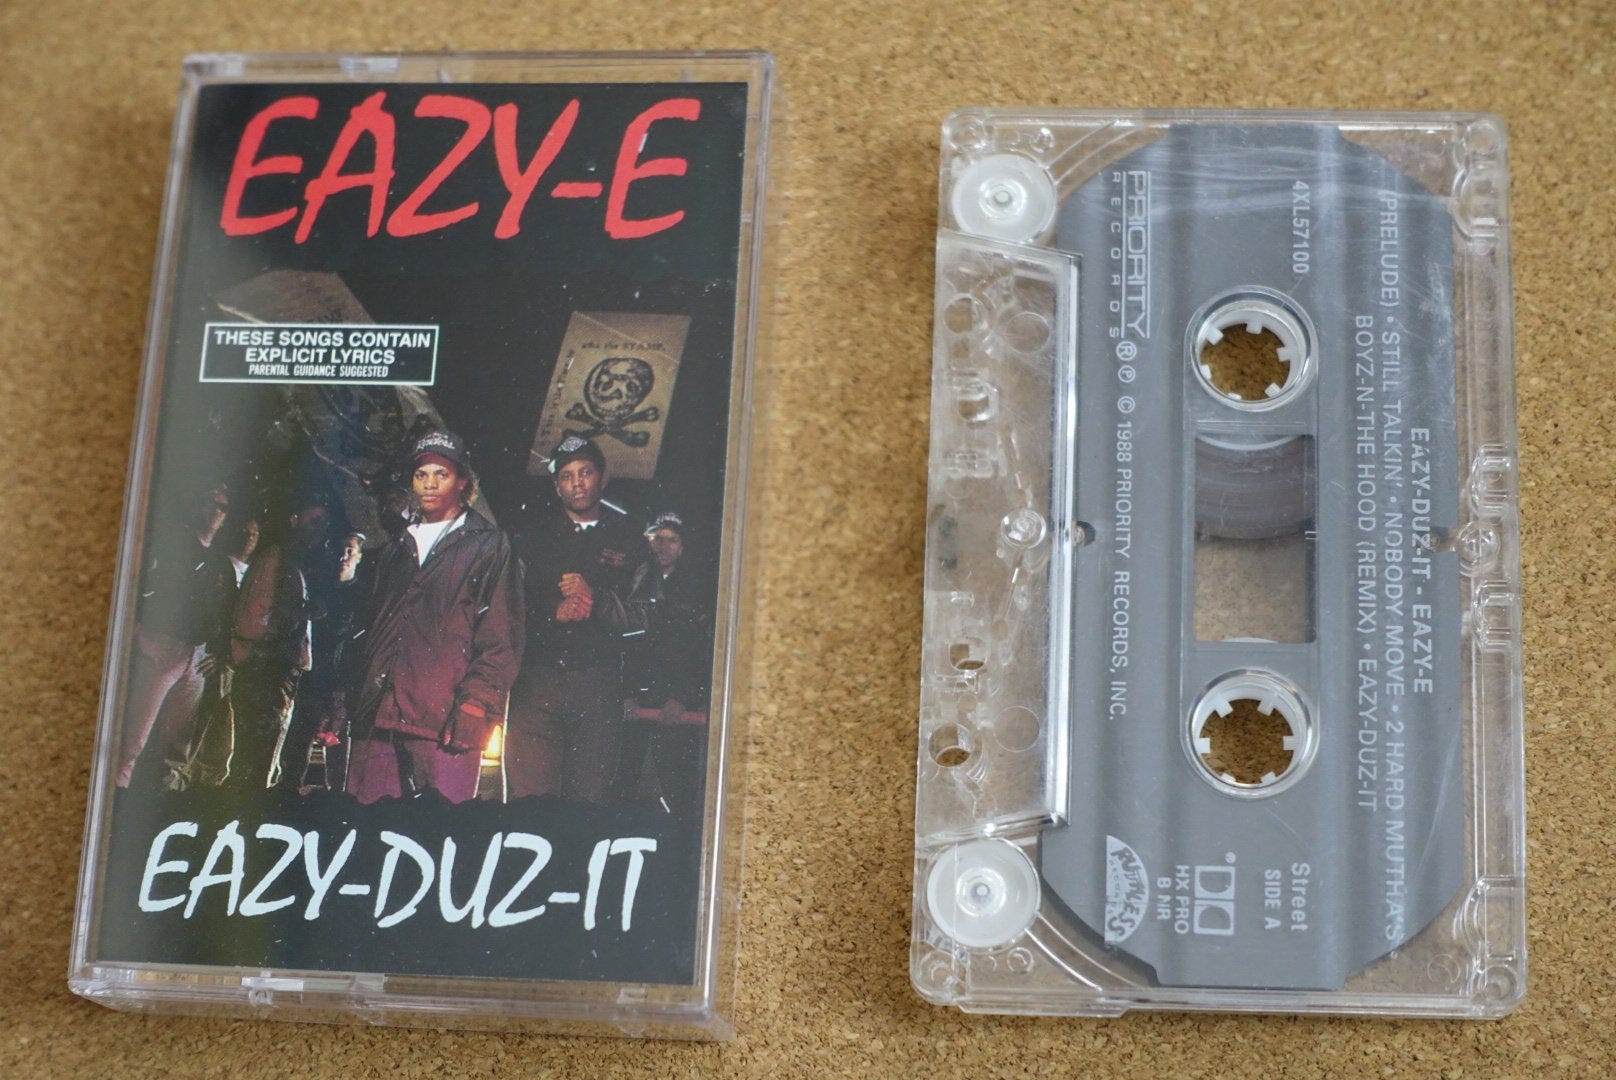 Eazy-Duz-It - Album by Eazy-E